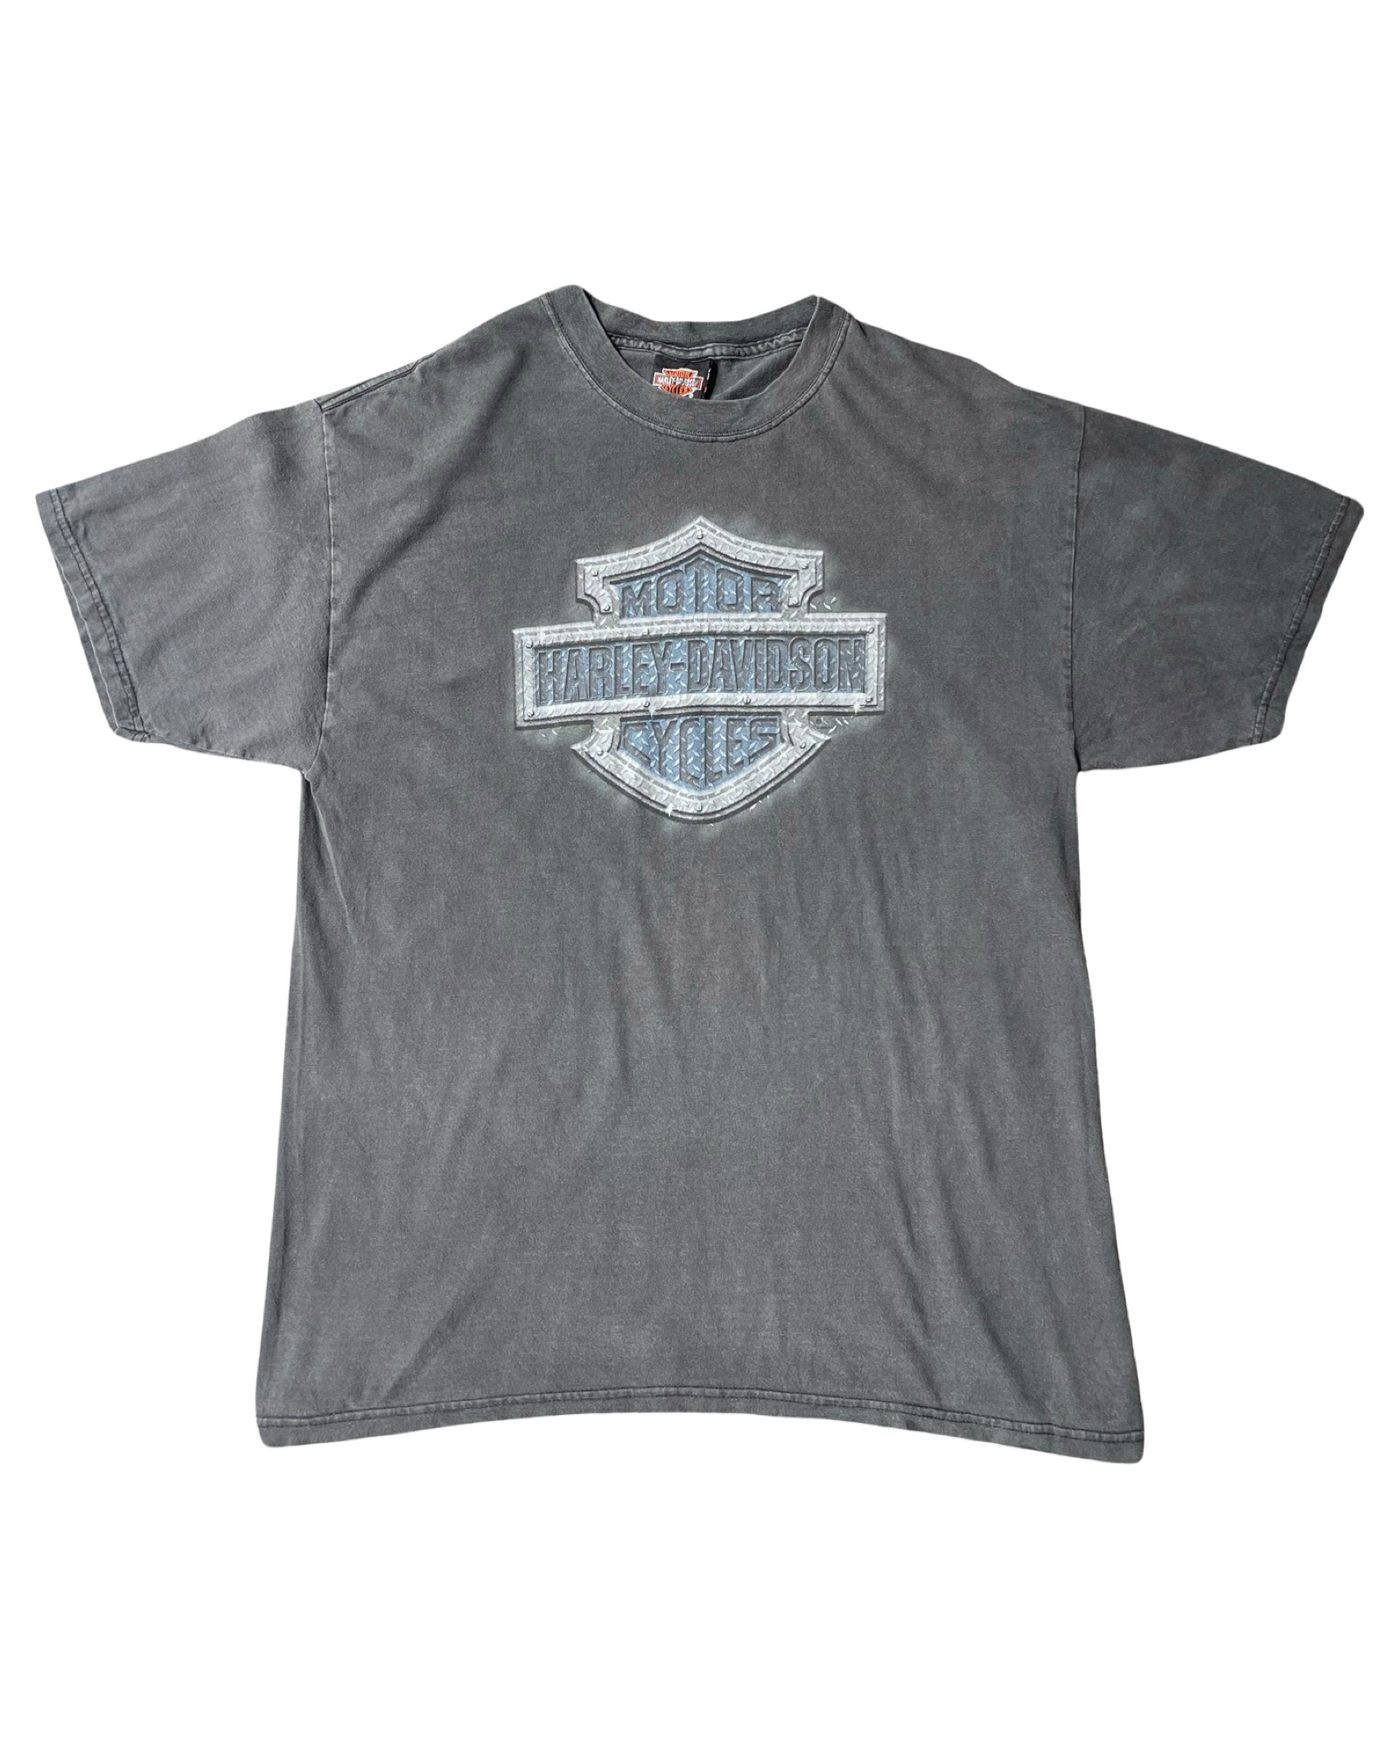 Vintage Harley Davidson T-Shirt Size L